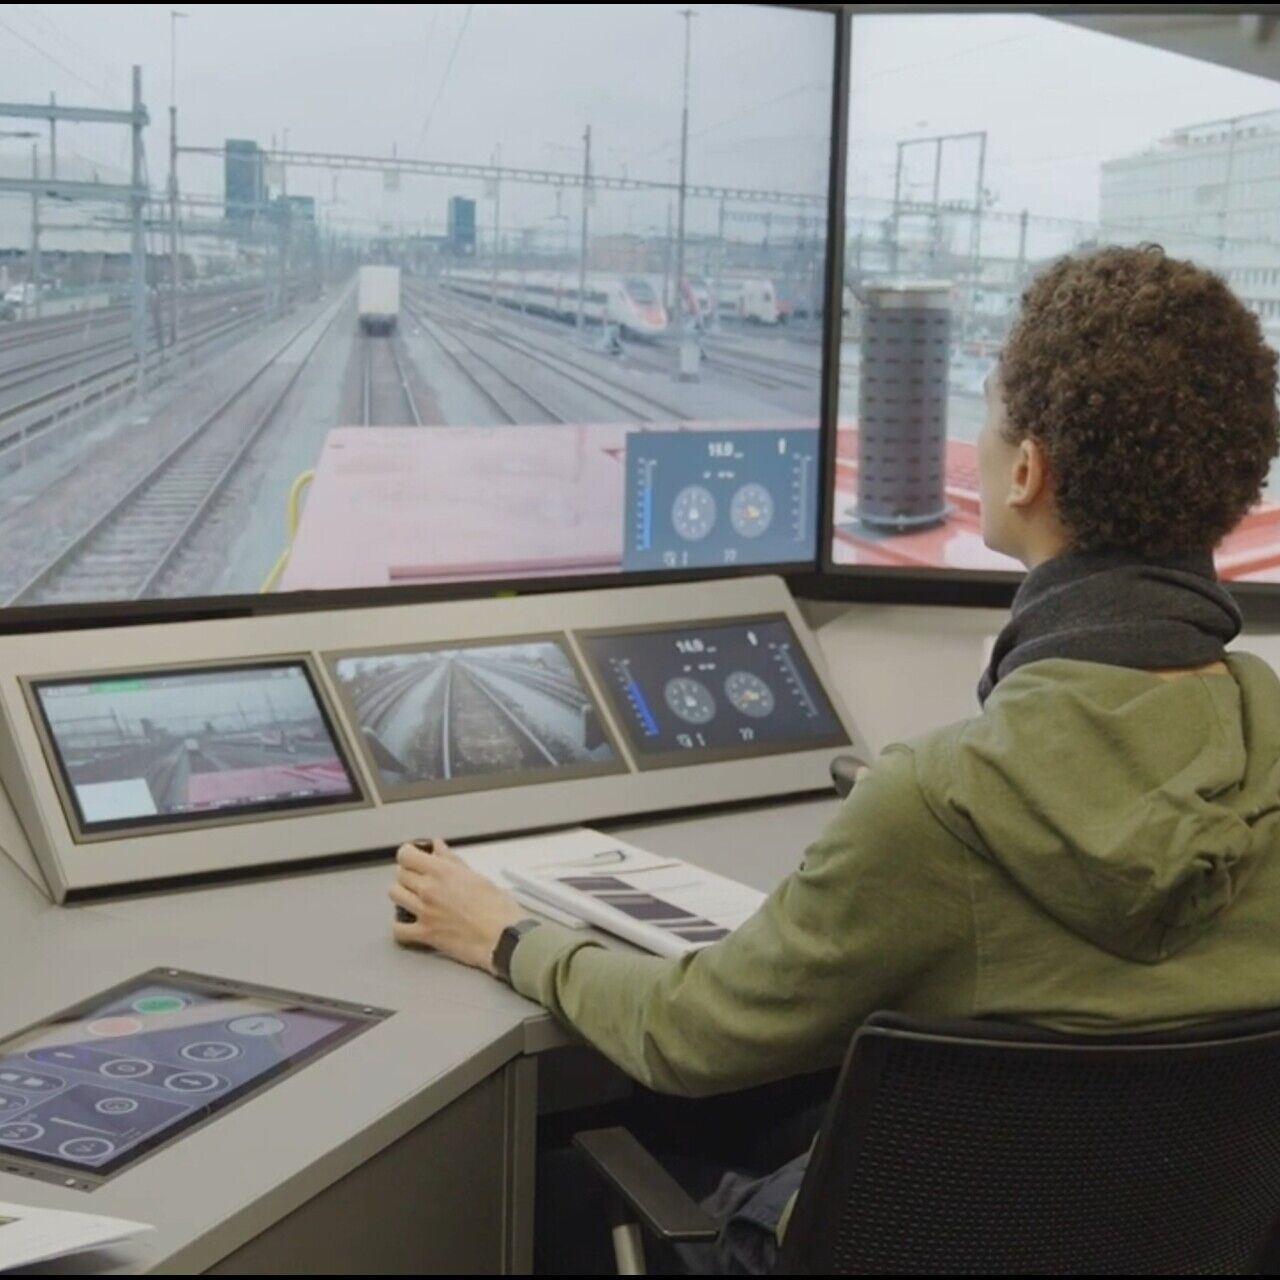 Tālvadības lokomotīve: Cīrihē Mülligenā, Šveicē, tika organizēti SBB CFF FFS testi ar Beat Rappo koordināciju un Alstom izveidoto paneli.